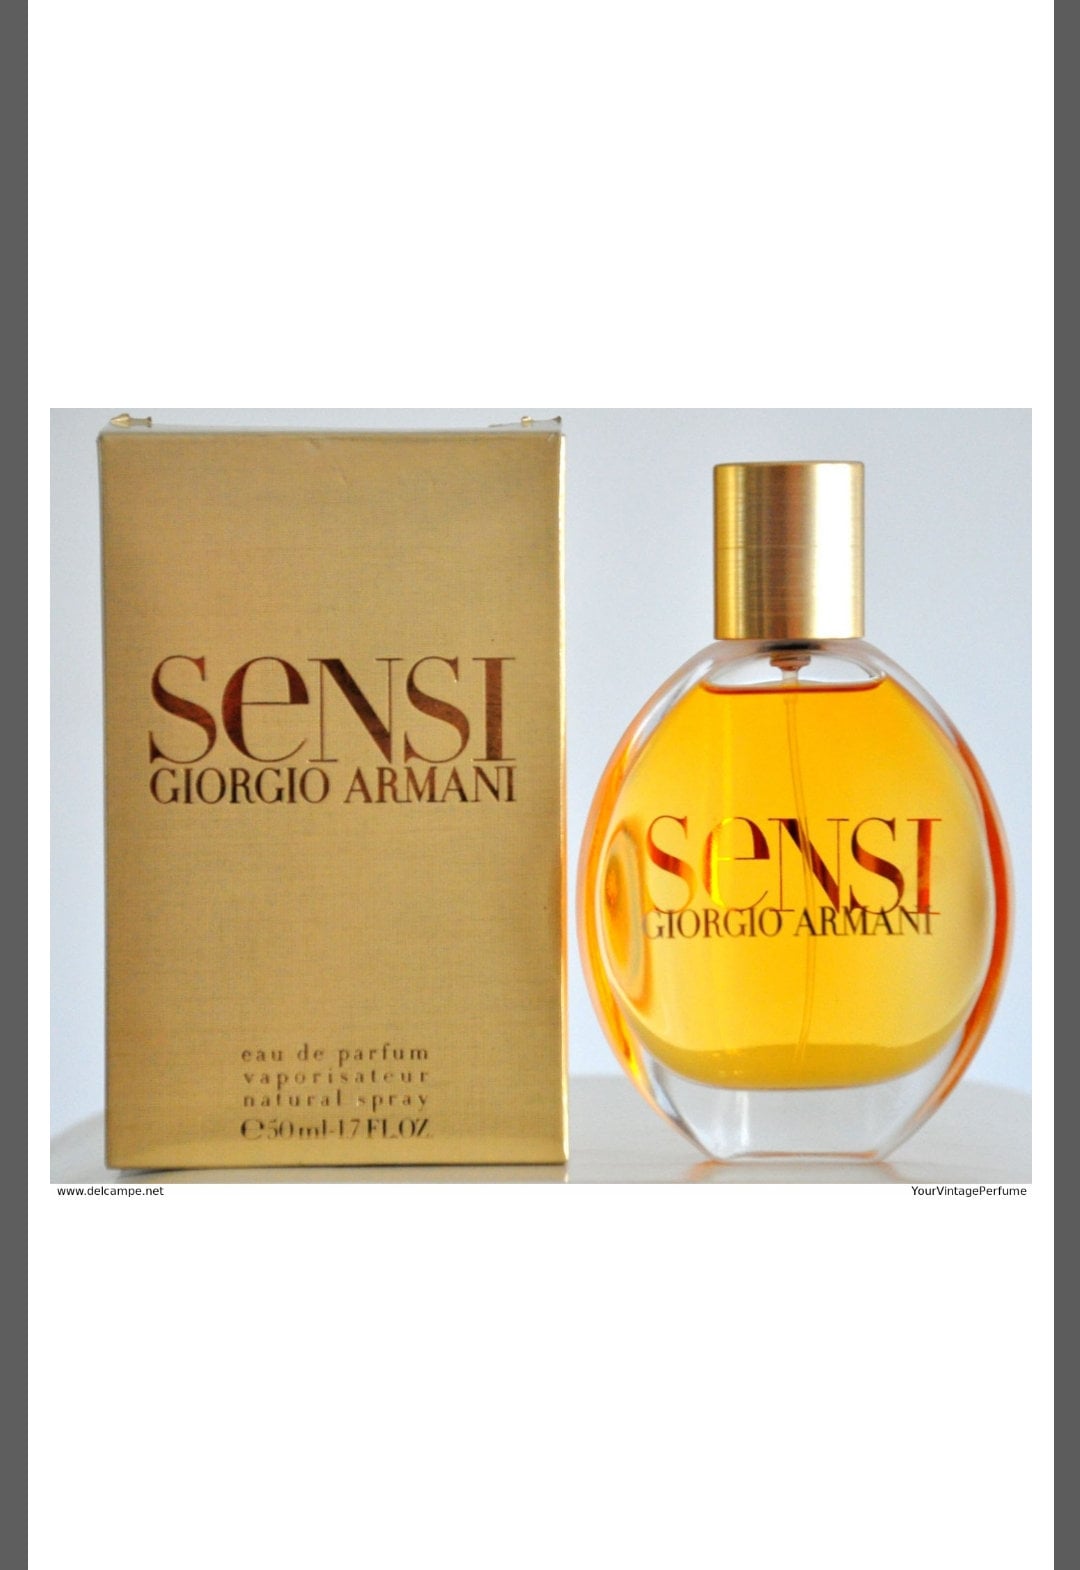 Sensi Giorgio Armani 2002 Eau De Parfum 50Ml 1, 7 Fl.oz Natürlicher Spray Vintage Duft Für Frau Eingestellt Neu Versiegelt von Etsy - ItalianRetroBoutique